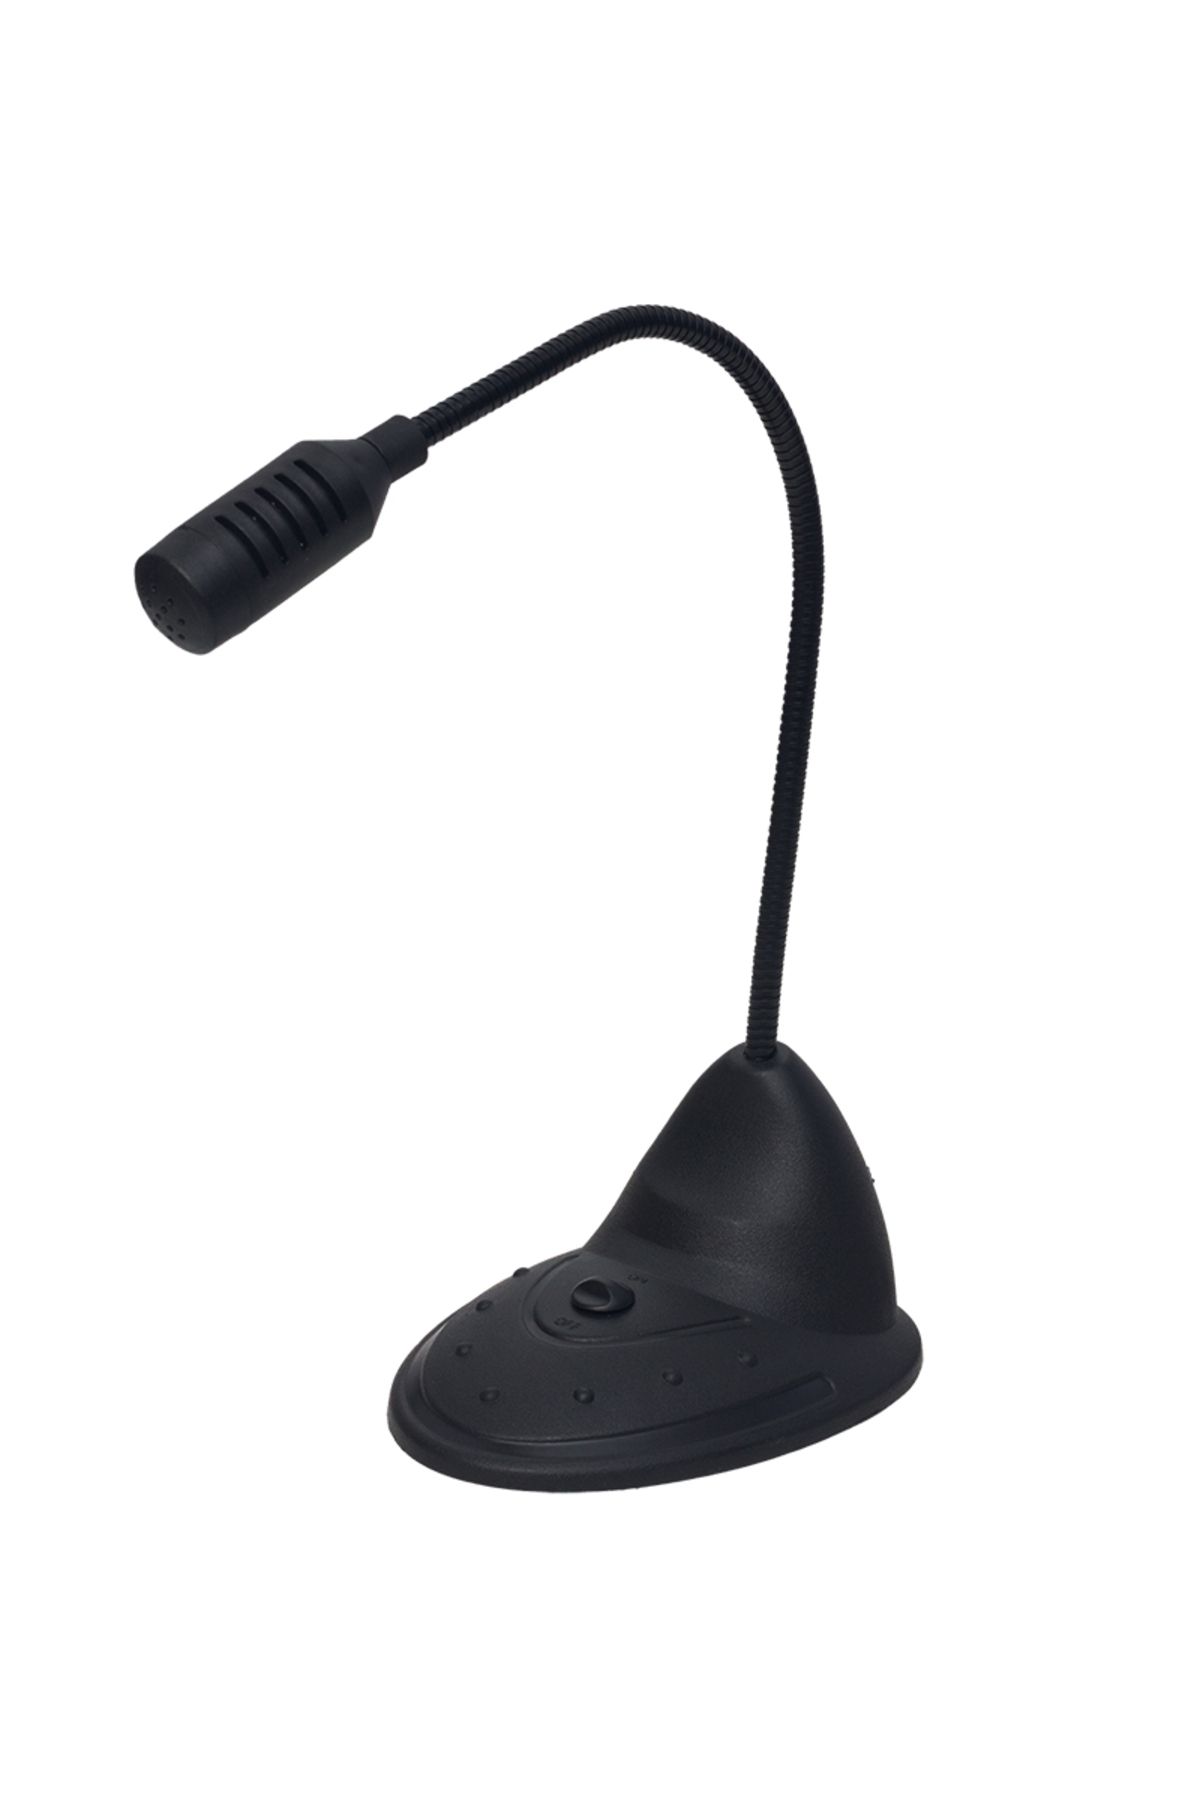 Genel Markalar 3.5mm Jacklı Bilgisayar Mikrofonu Siyah (4434)